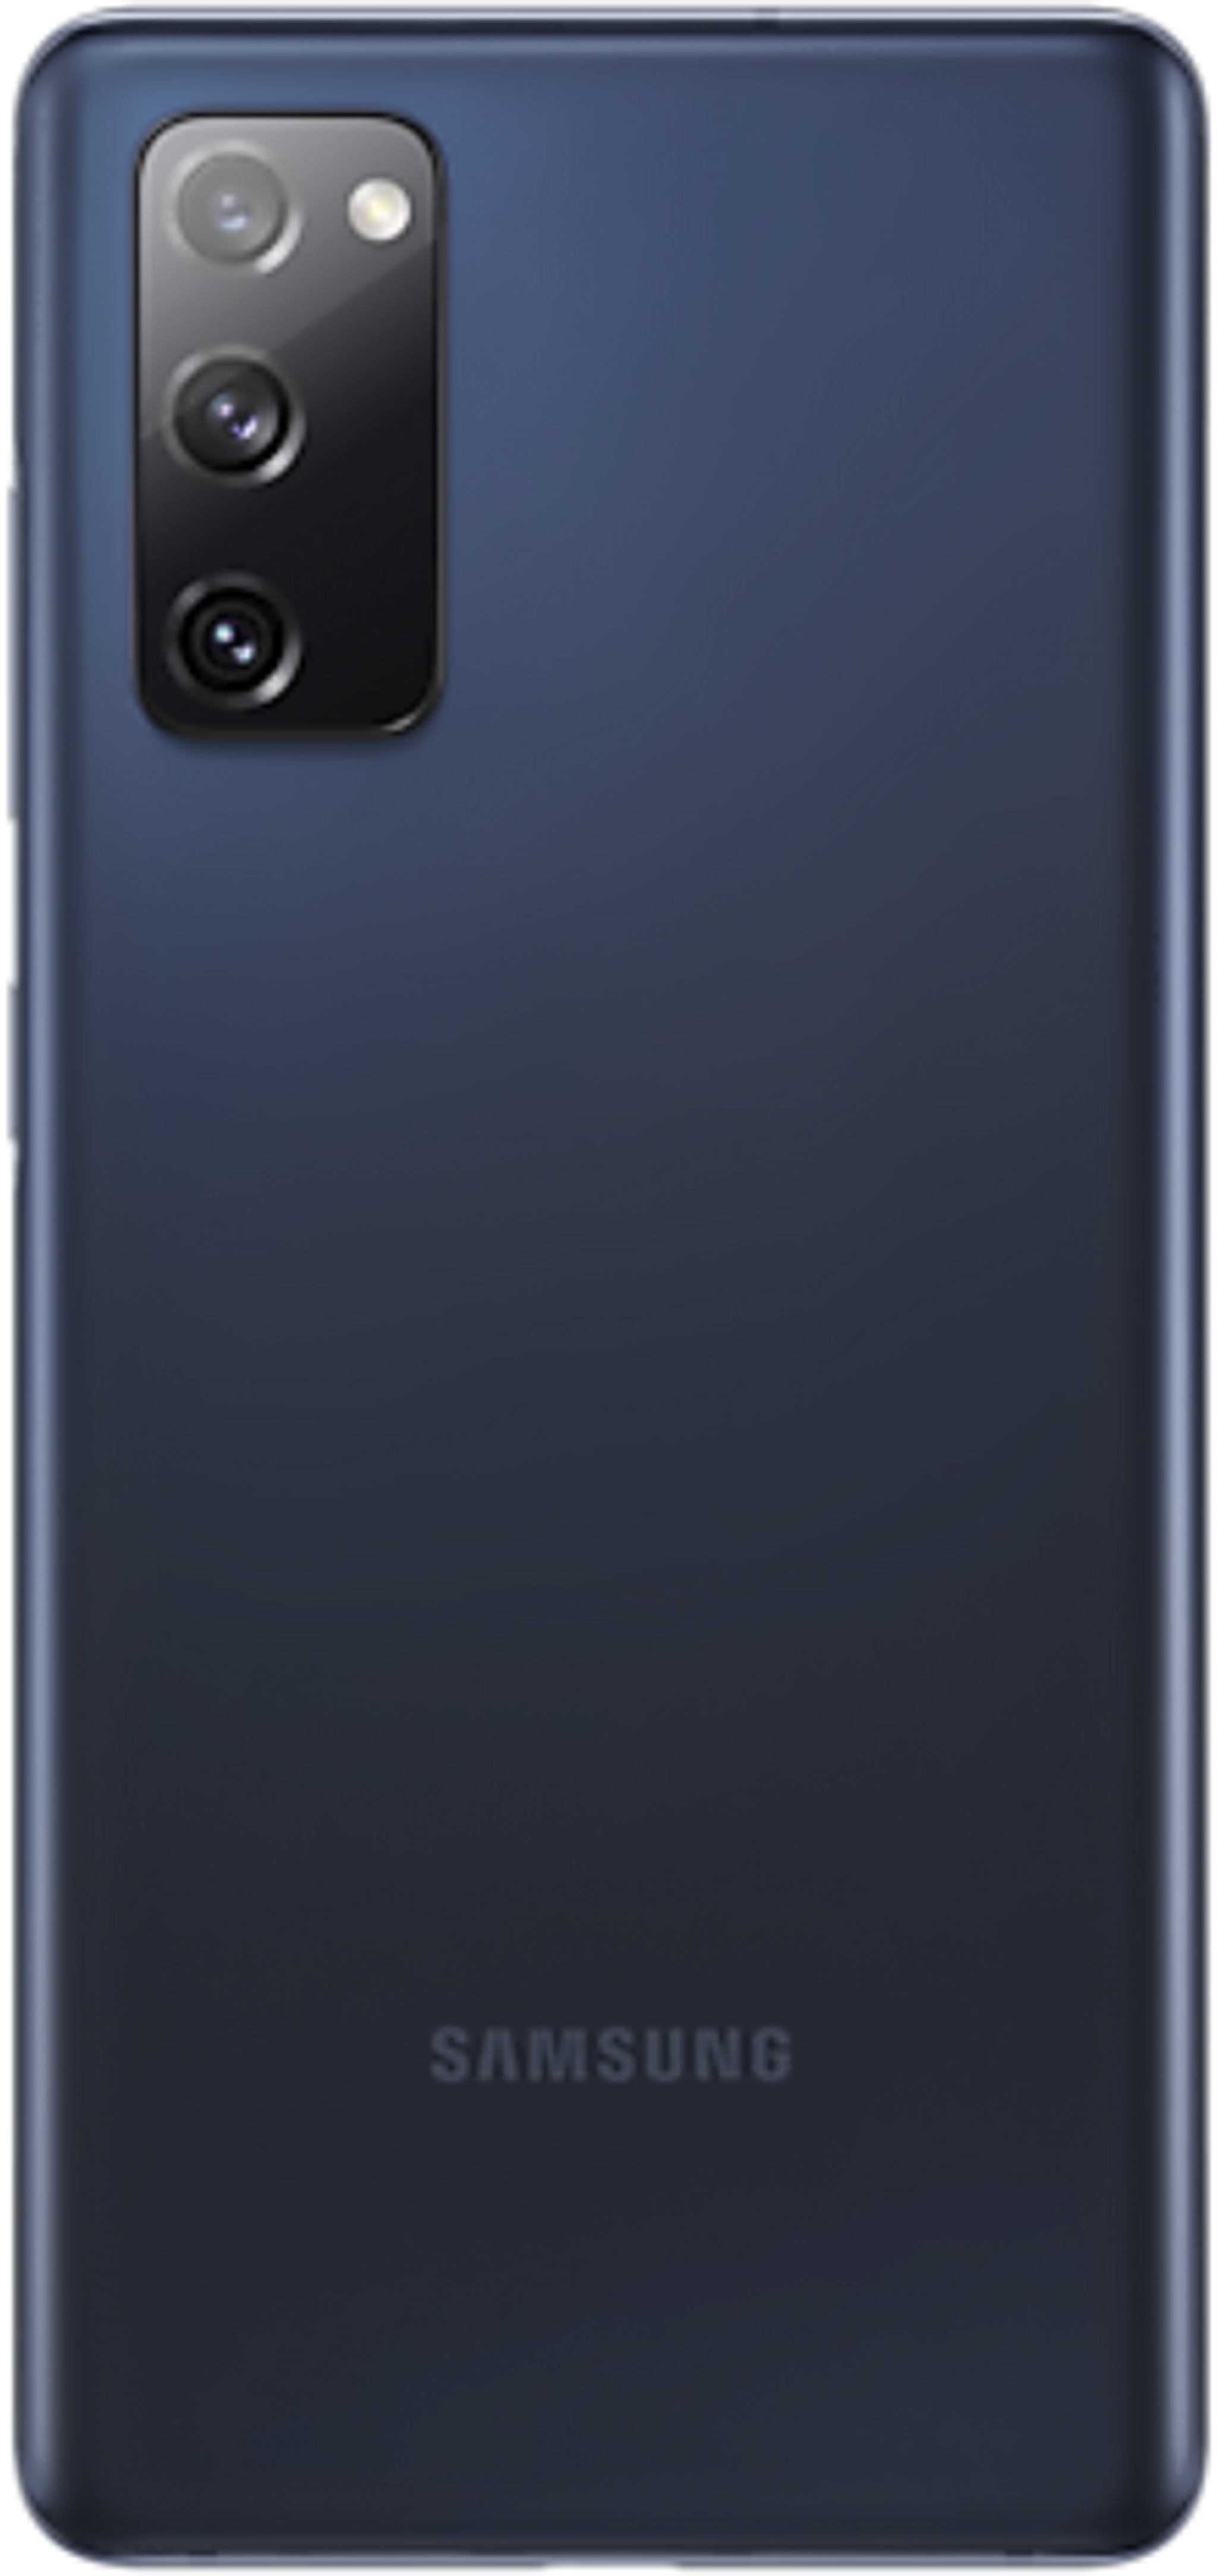 هاتف سامسونج اس 20 فان ايديشن بتقنية 5 جي وسعة 128 جيجابايت - أزرق